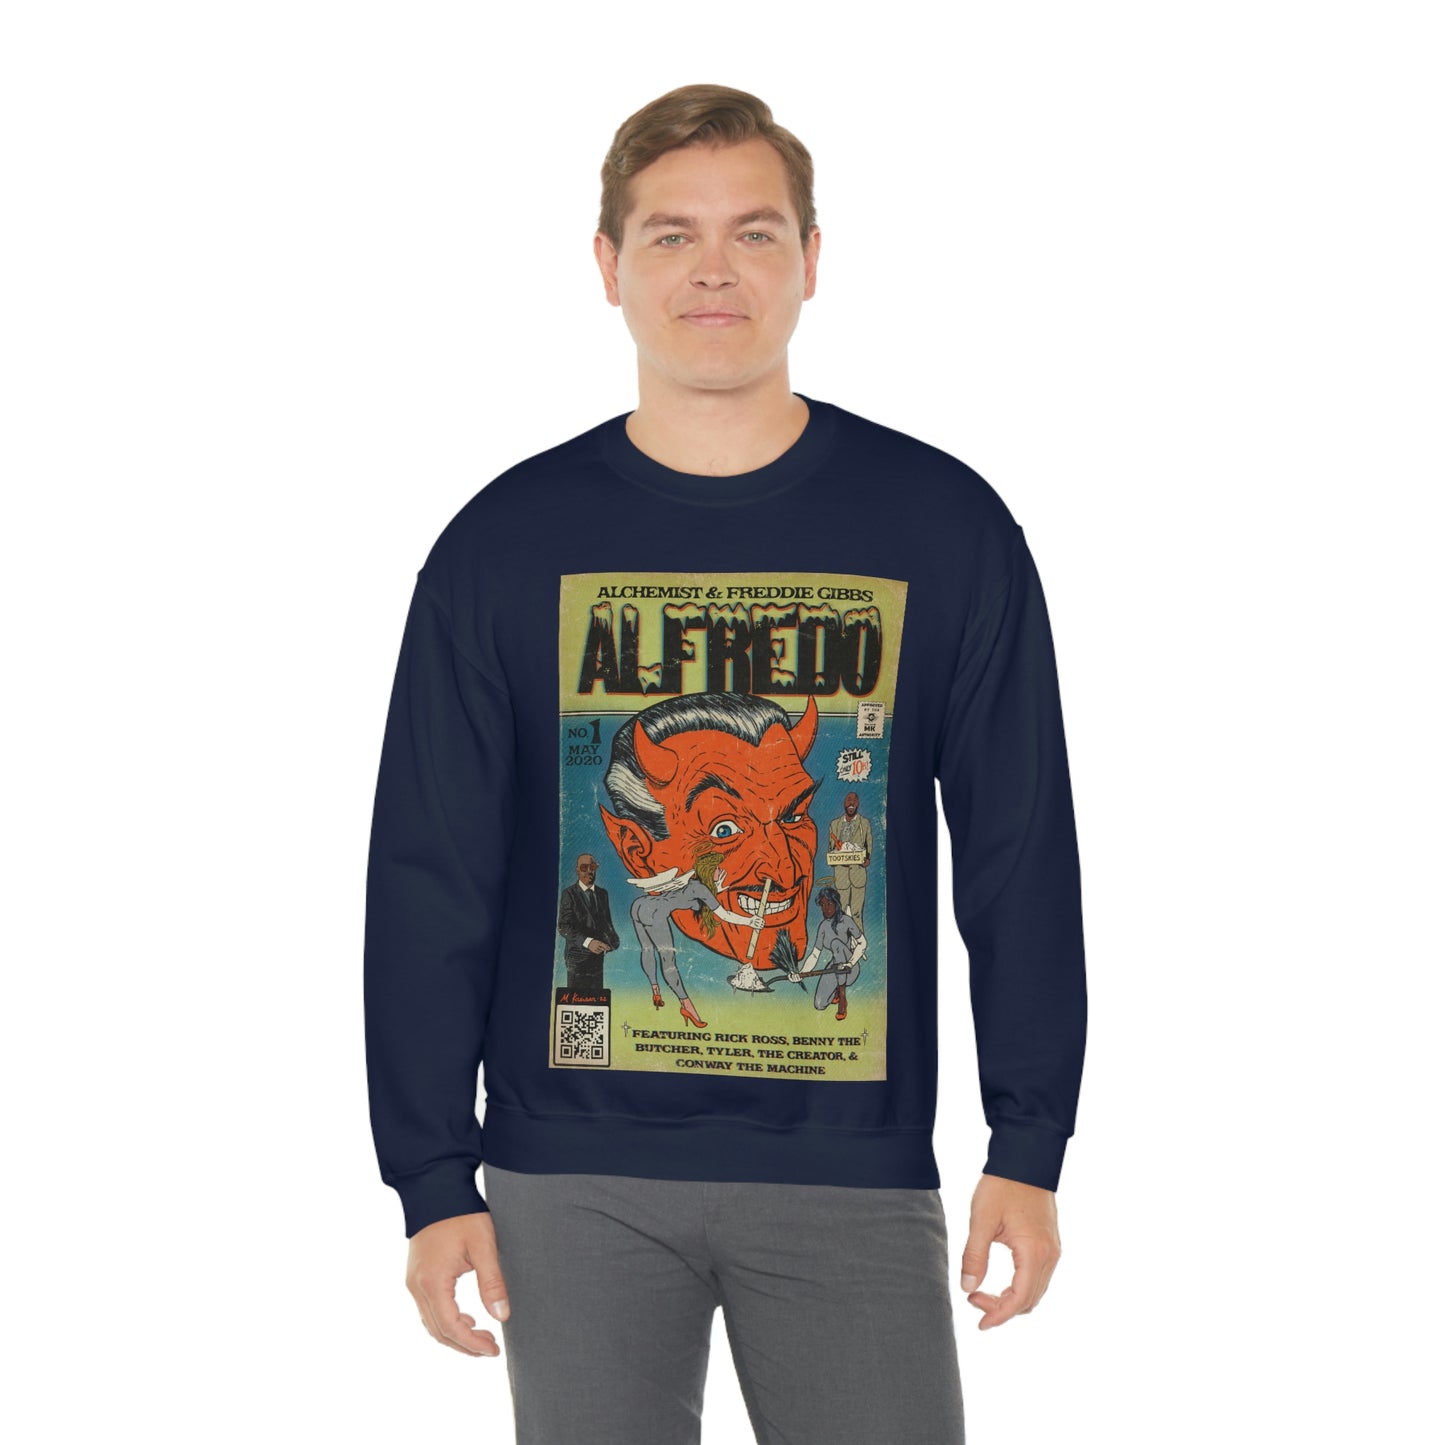 Alchemist & Freddie Gibbs- Alfredo- Unisex Heavy Blend™ Crewneck Sweatshirt